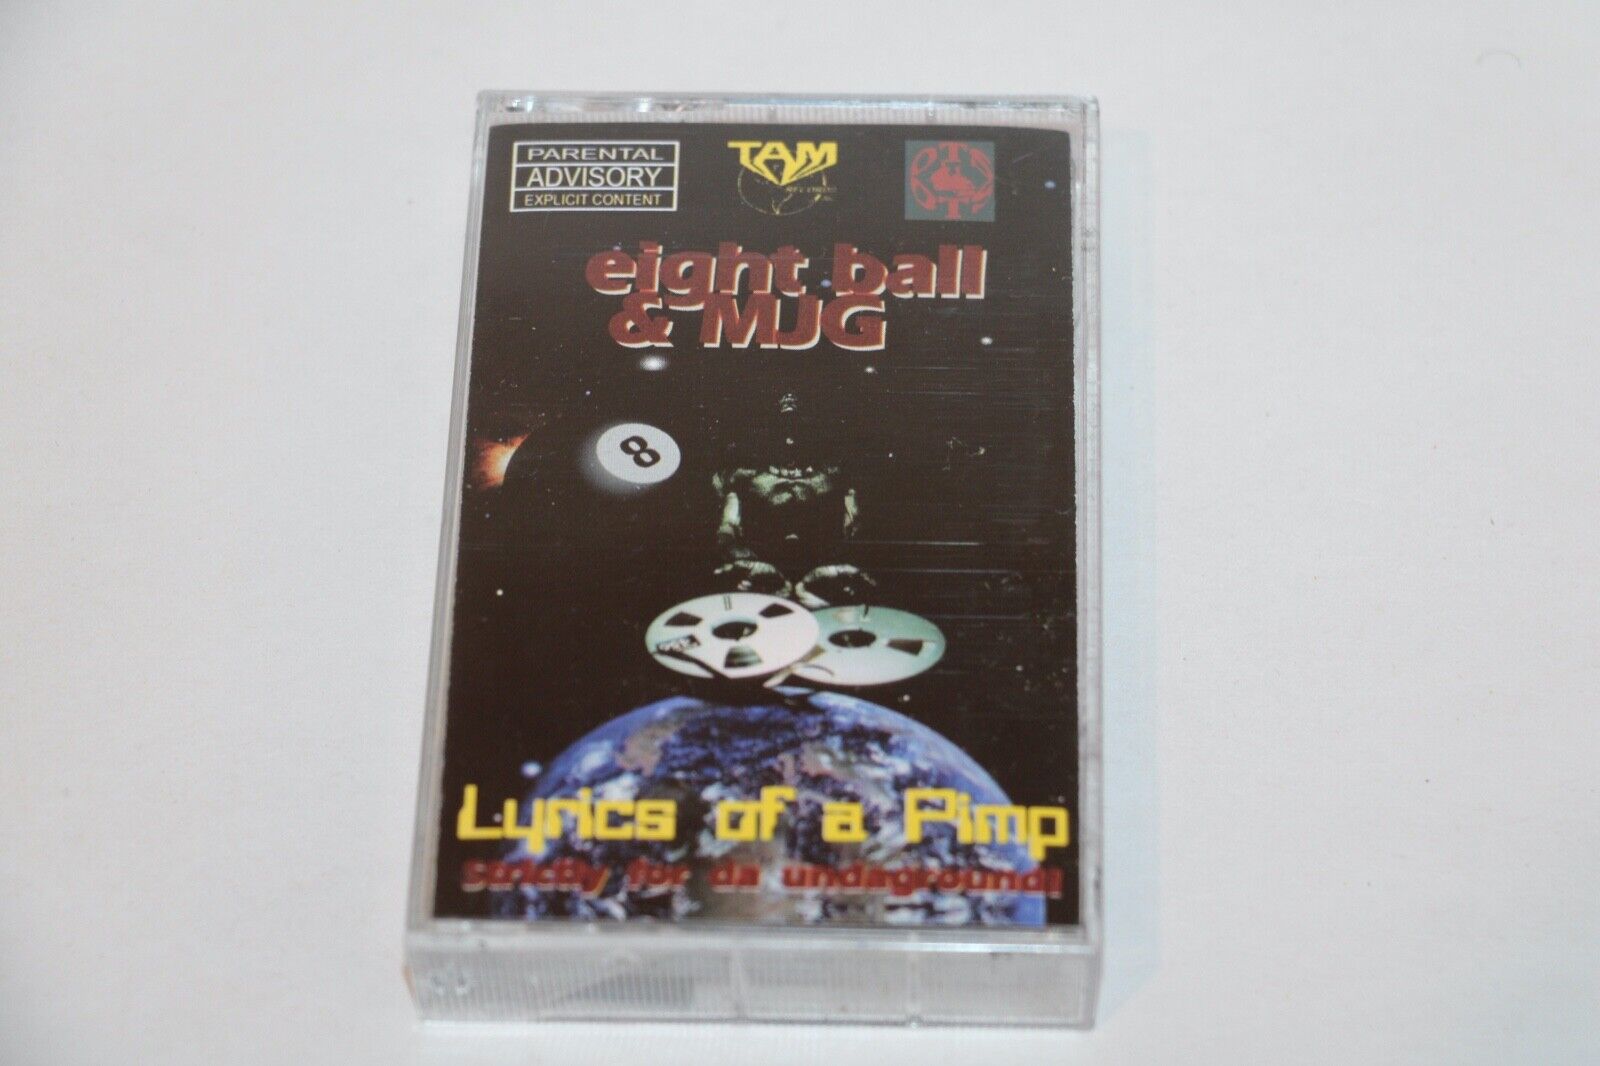 Eight Ball & MJG - Lyrics Of A Pimp 90's Hip Hop Gangsta Rap Cassette Album